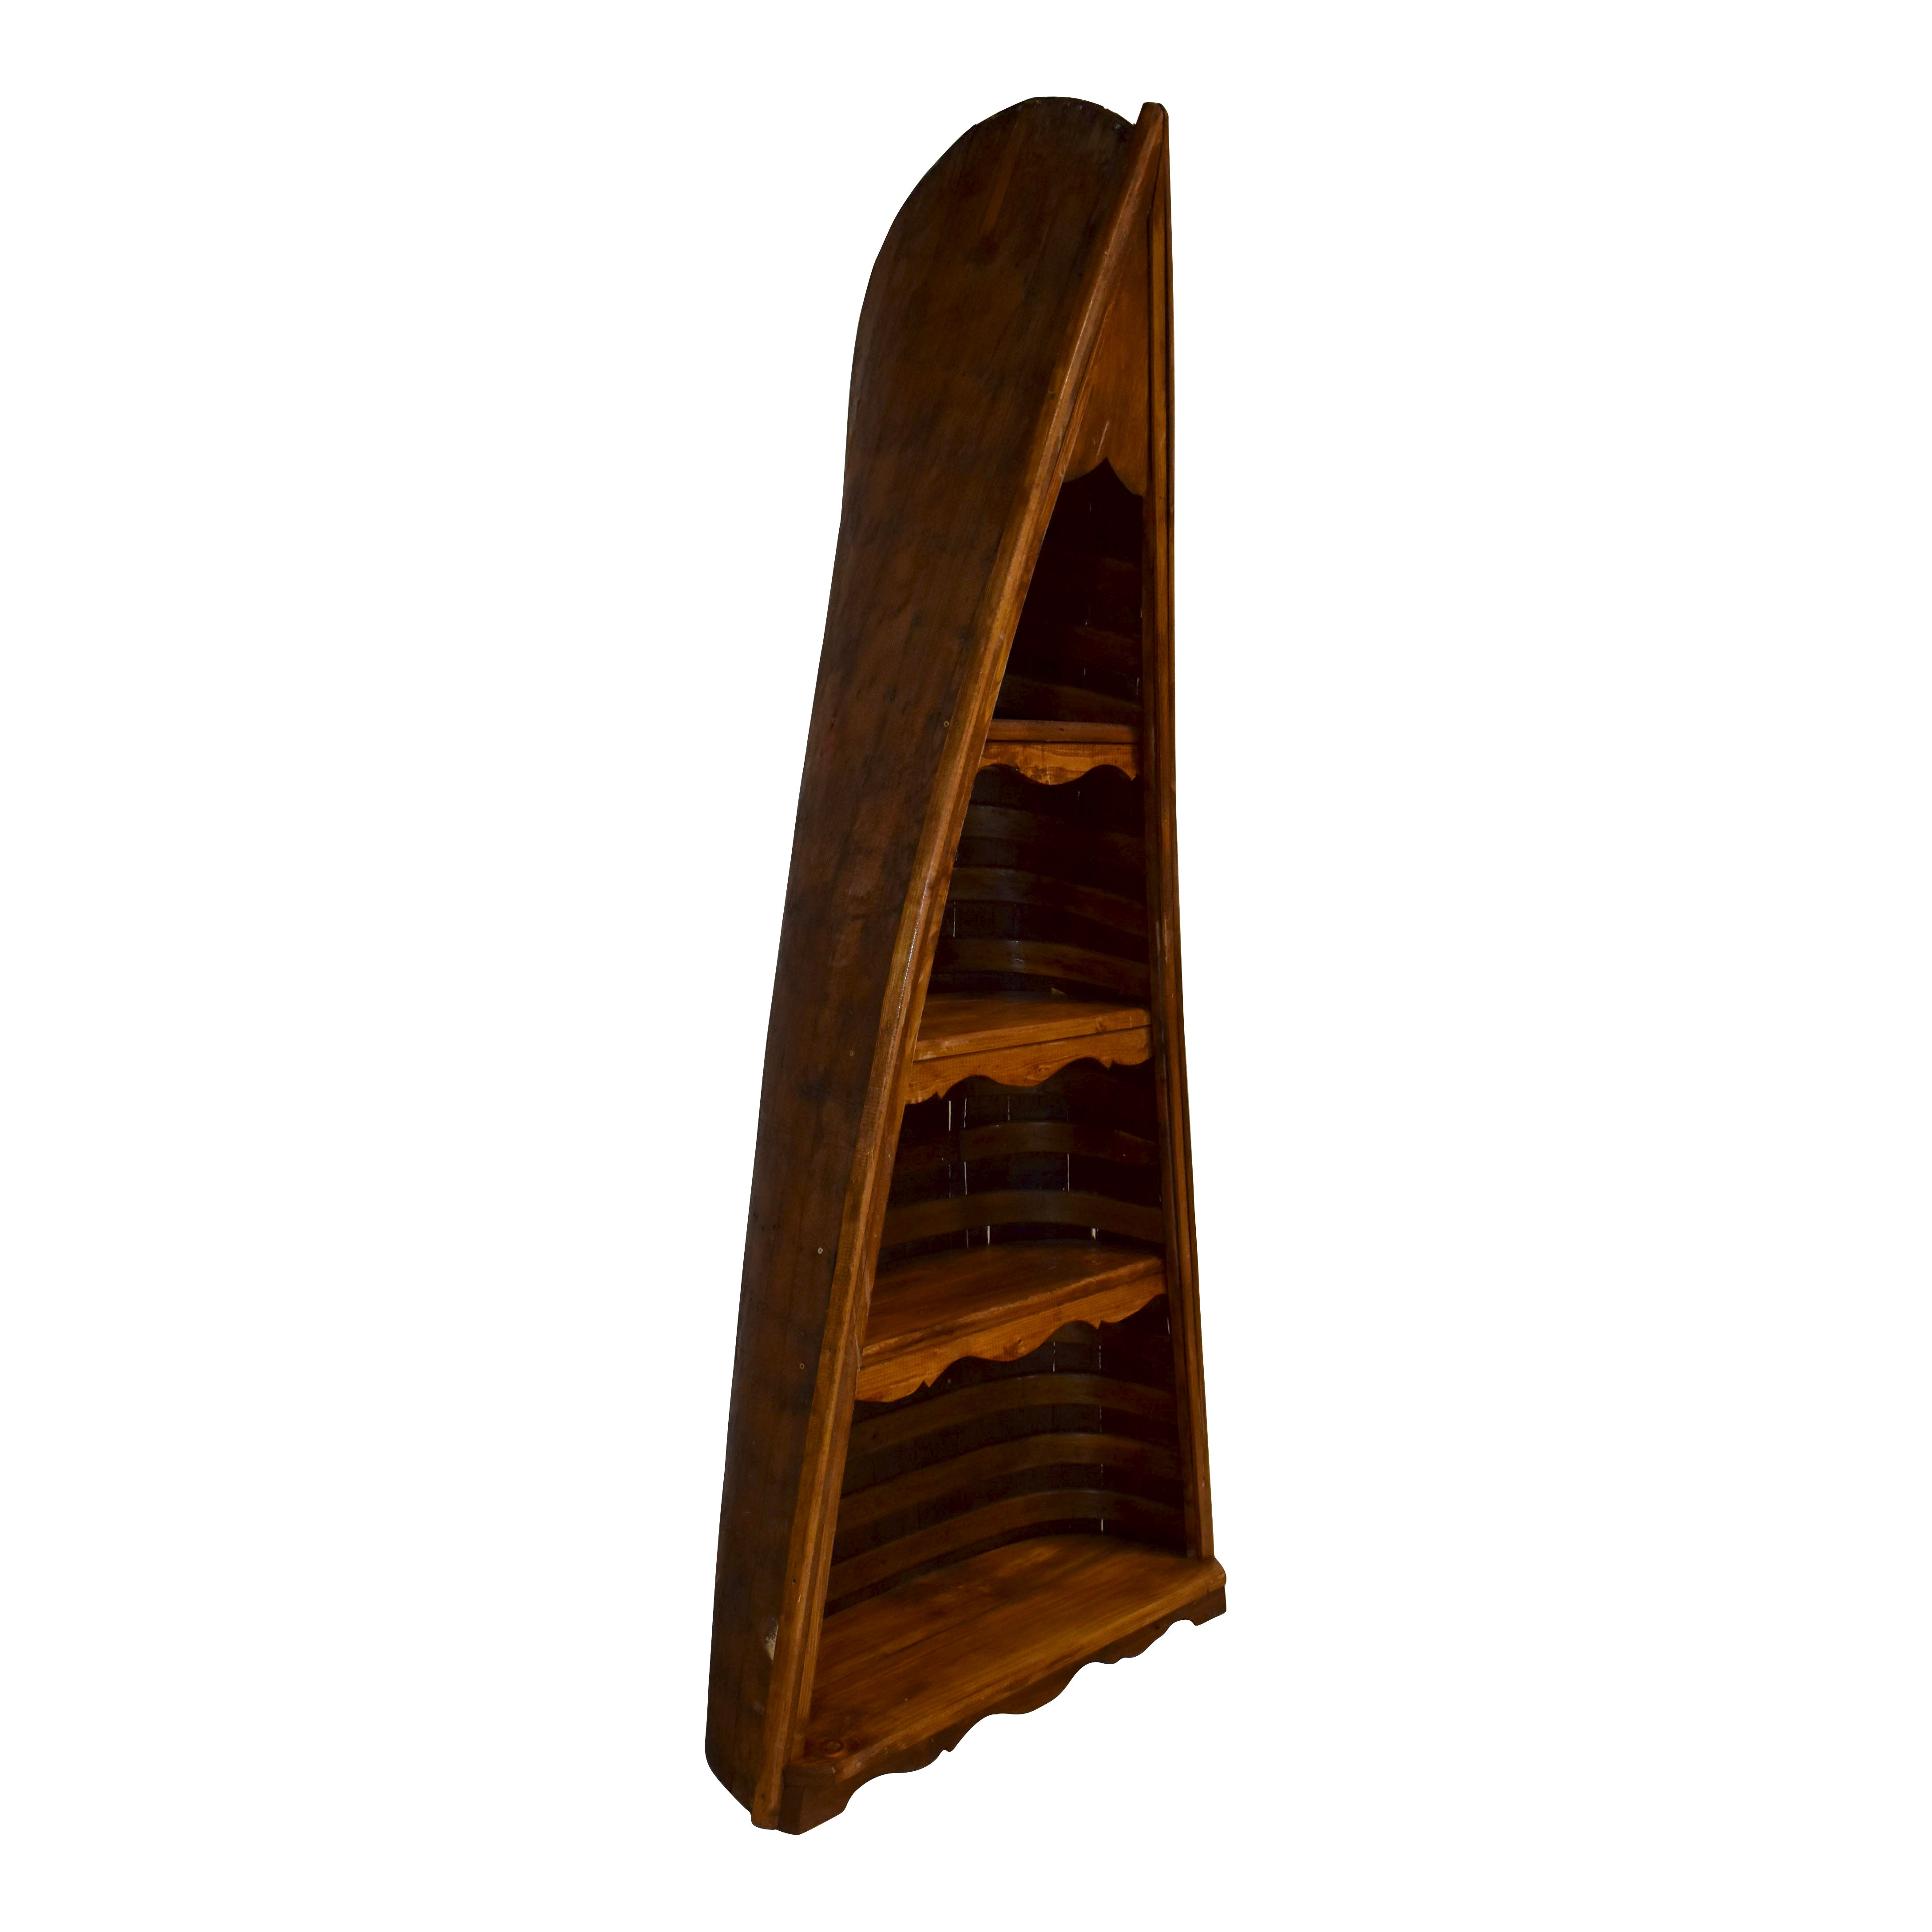 Wooden Canoe Bookshelf with Four Shelves